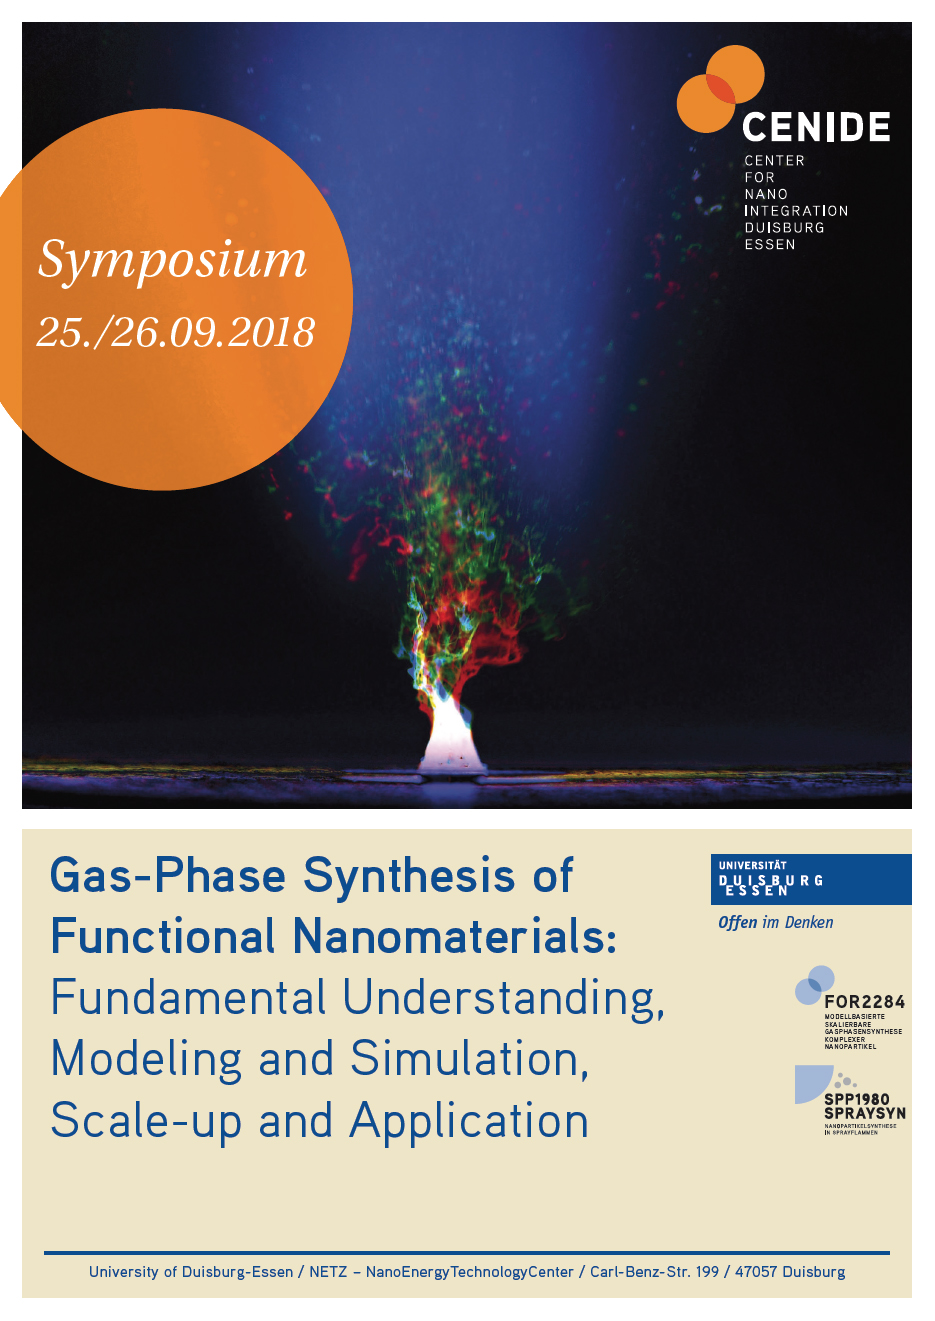 Symposium Plakat 2018